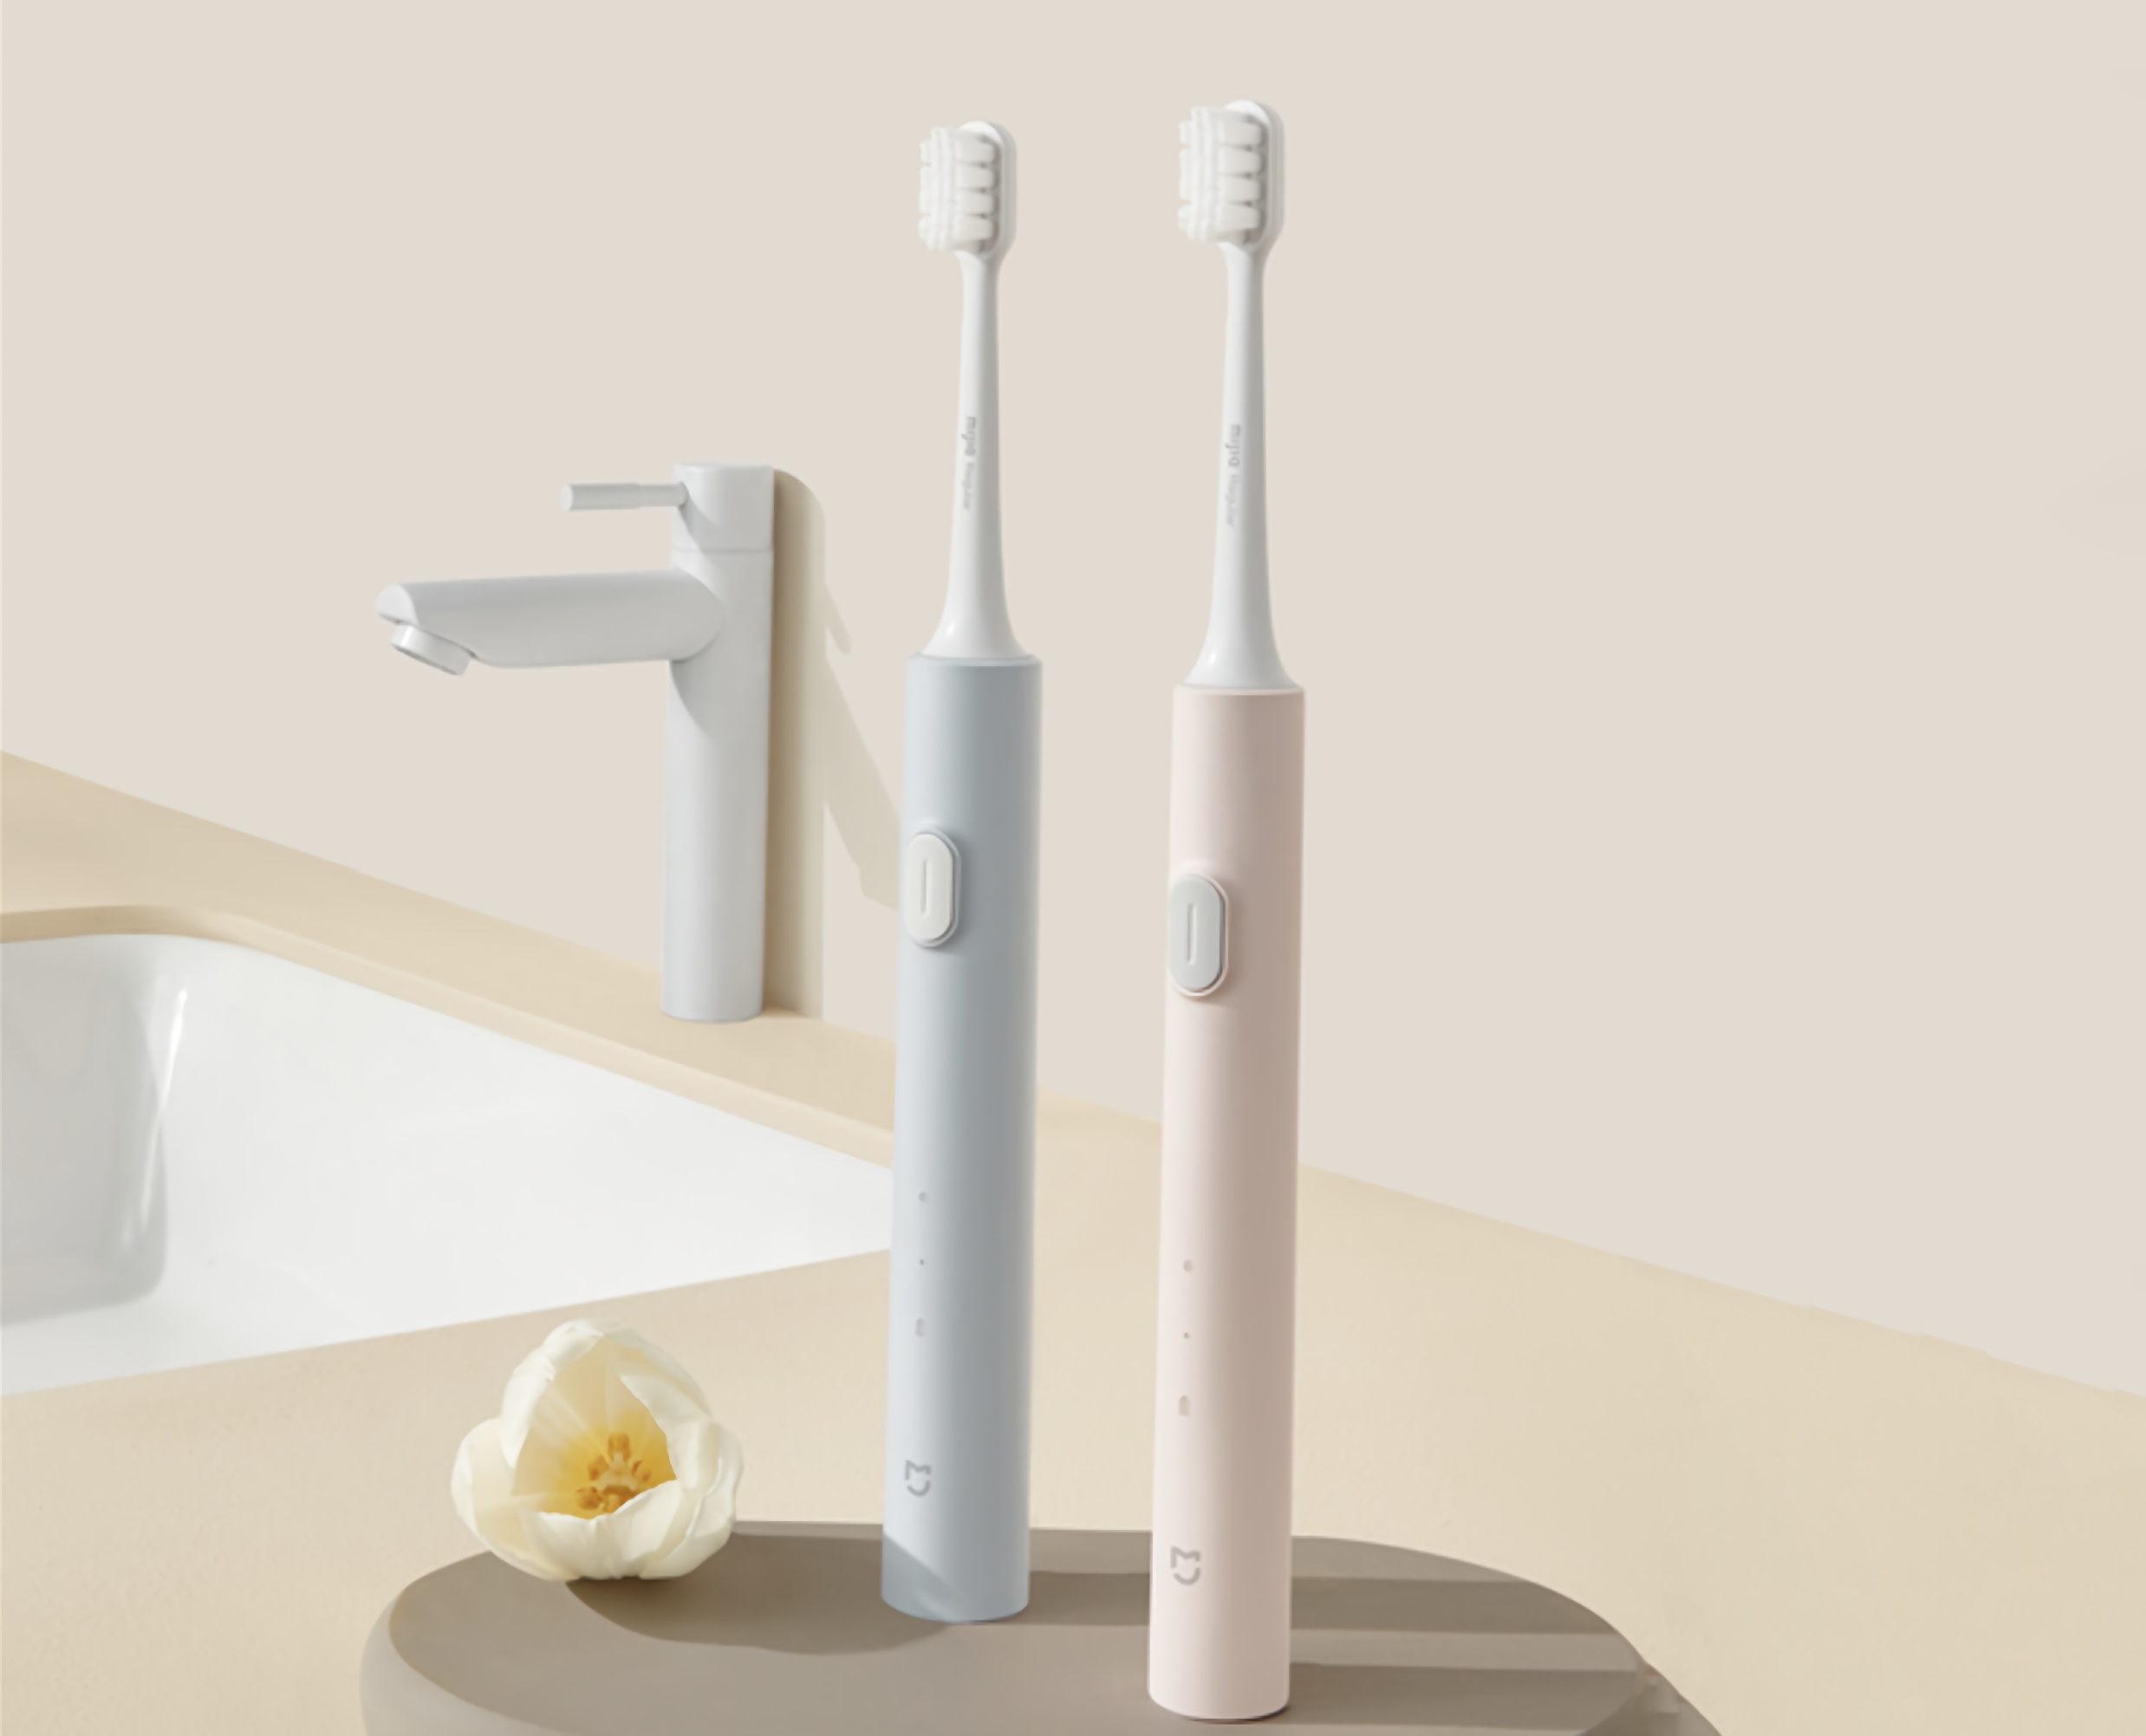 MiJia T200 Sonic Electric Toothbrush : une brosse à dents électrique de l'écosystème Xiaomi avec une autonomie allant jusqu'à 25 jours